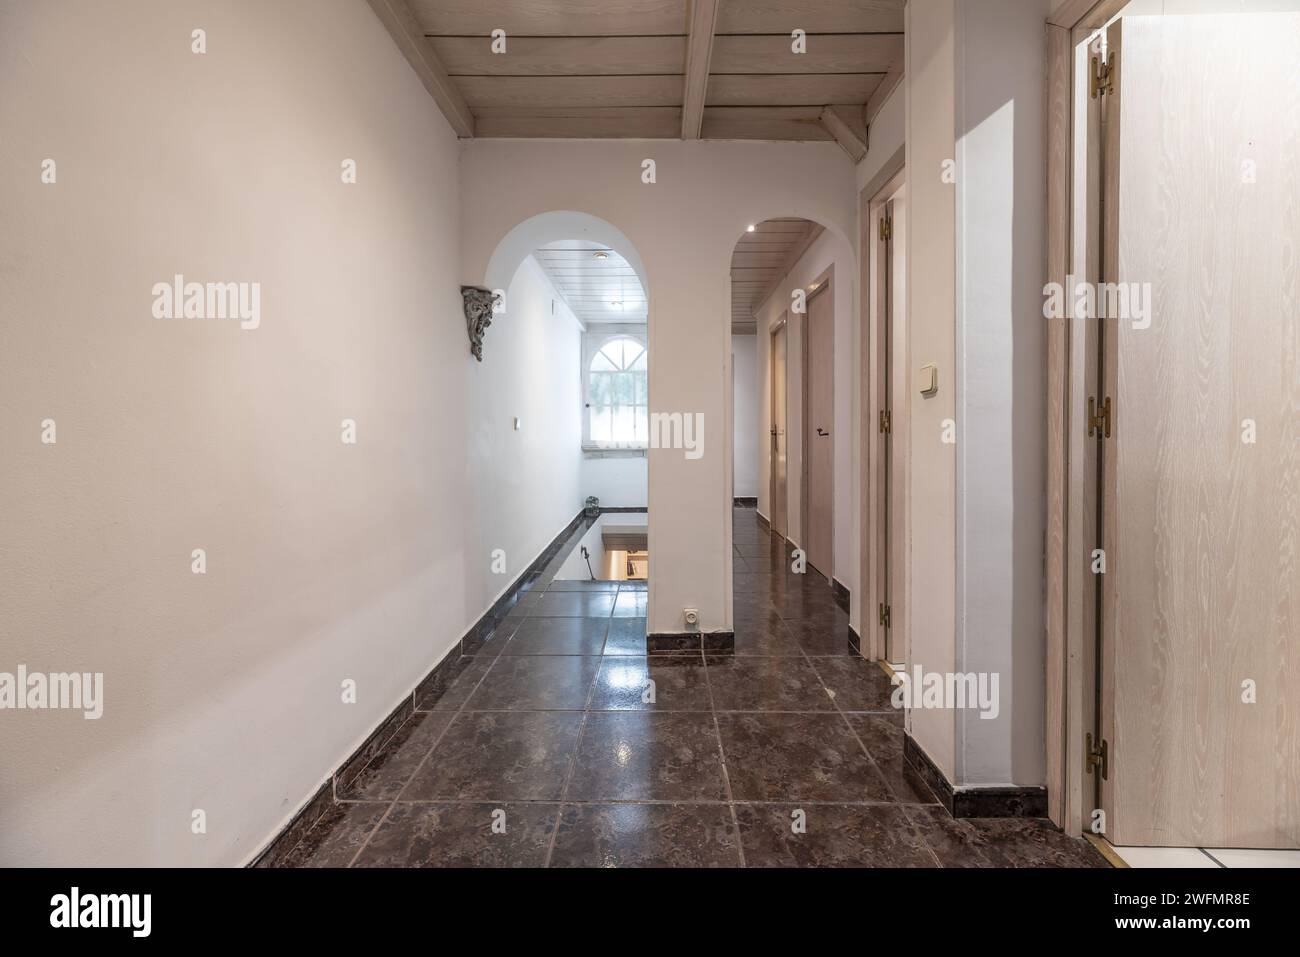 Corridoio di casa residenziale con porte in legno di quercia bianca, pavimenti in gres scuro lucido e scale che conducono al piano terra Foto Stock